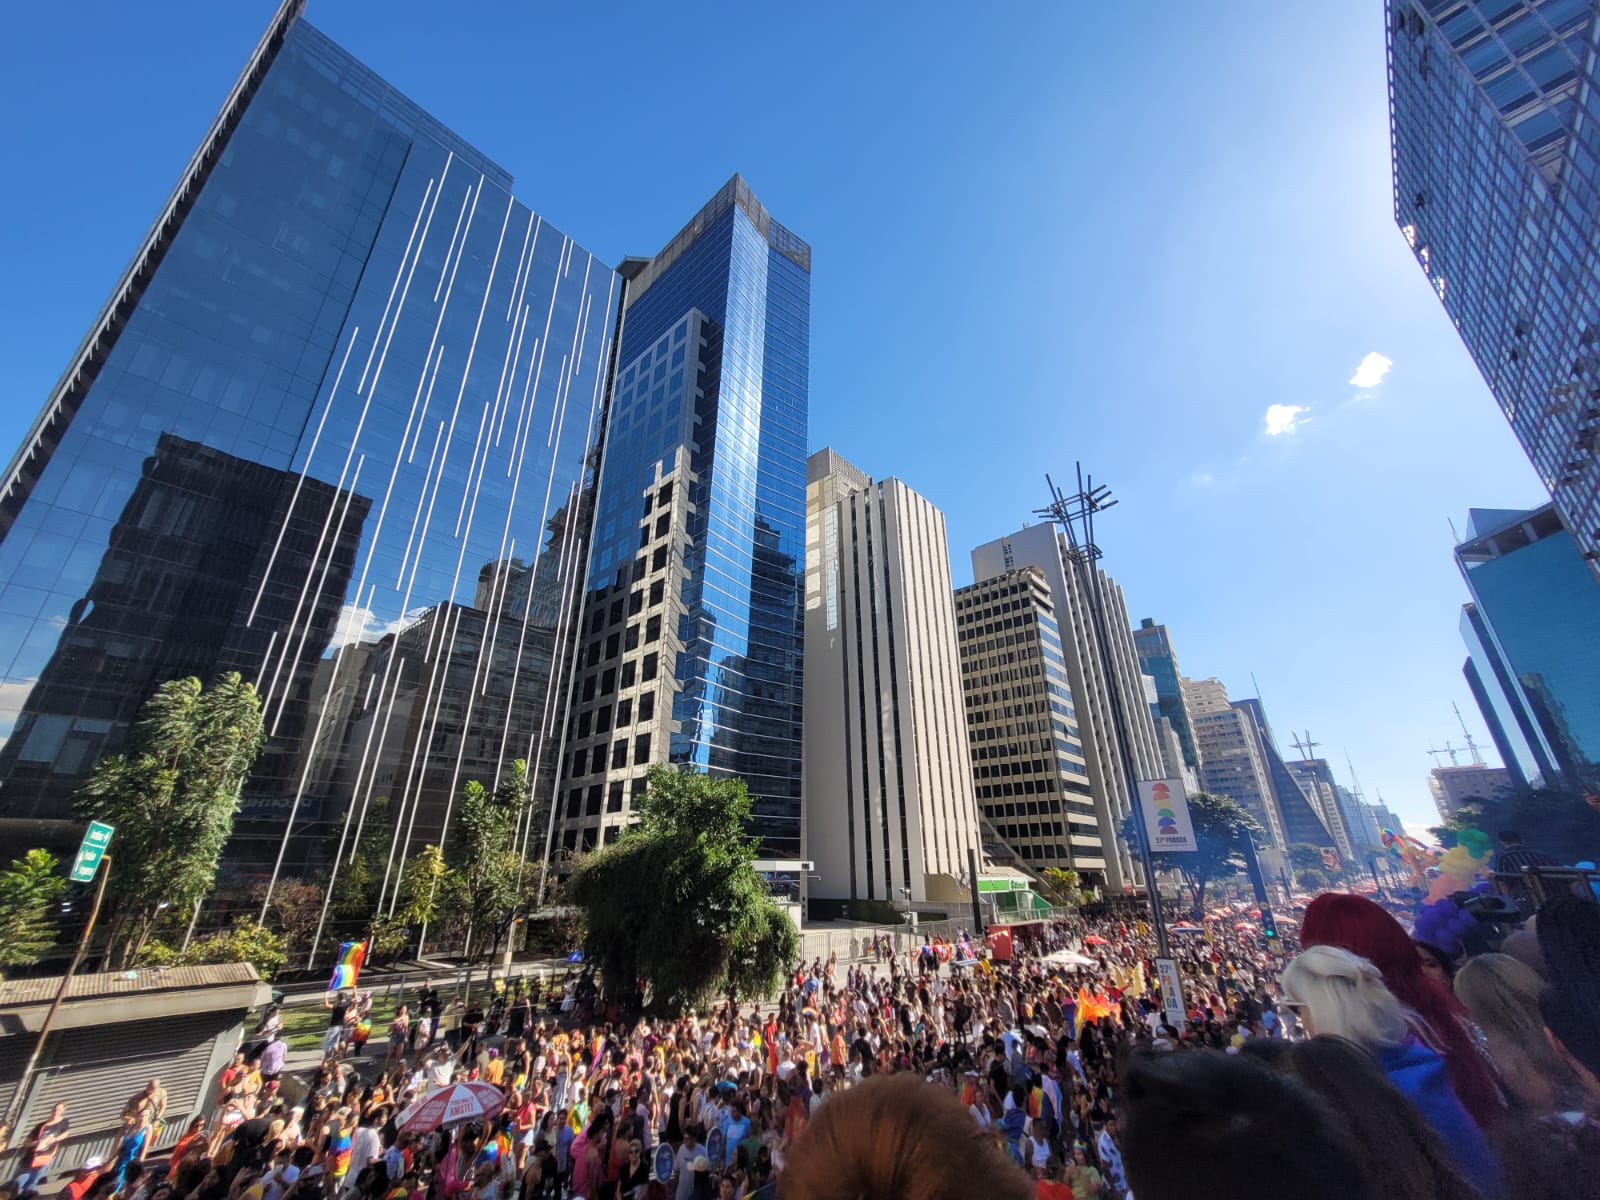 O calor faz a alegria dos participantes da Parada do Orgulho, em São Paulo. Foto: Rafaela Oliveira/iG